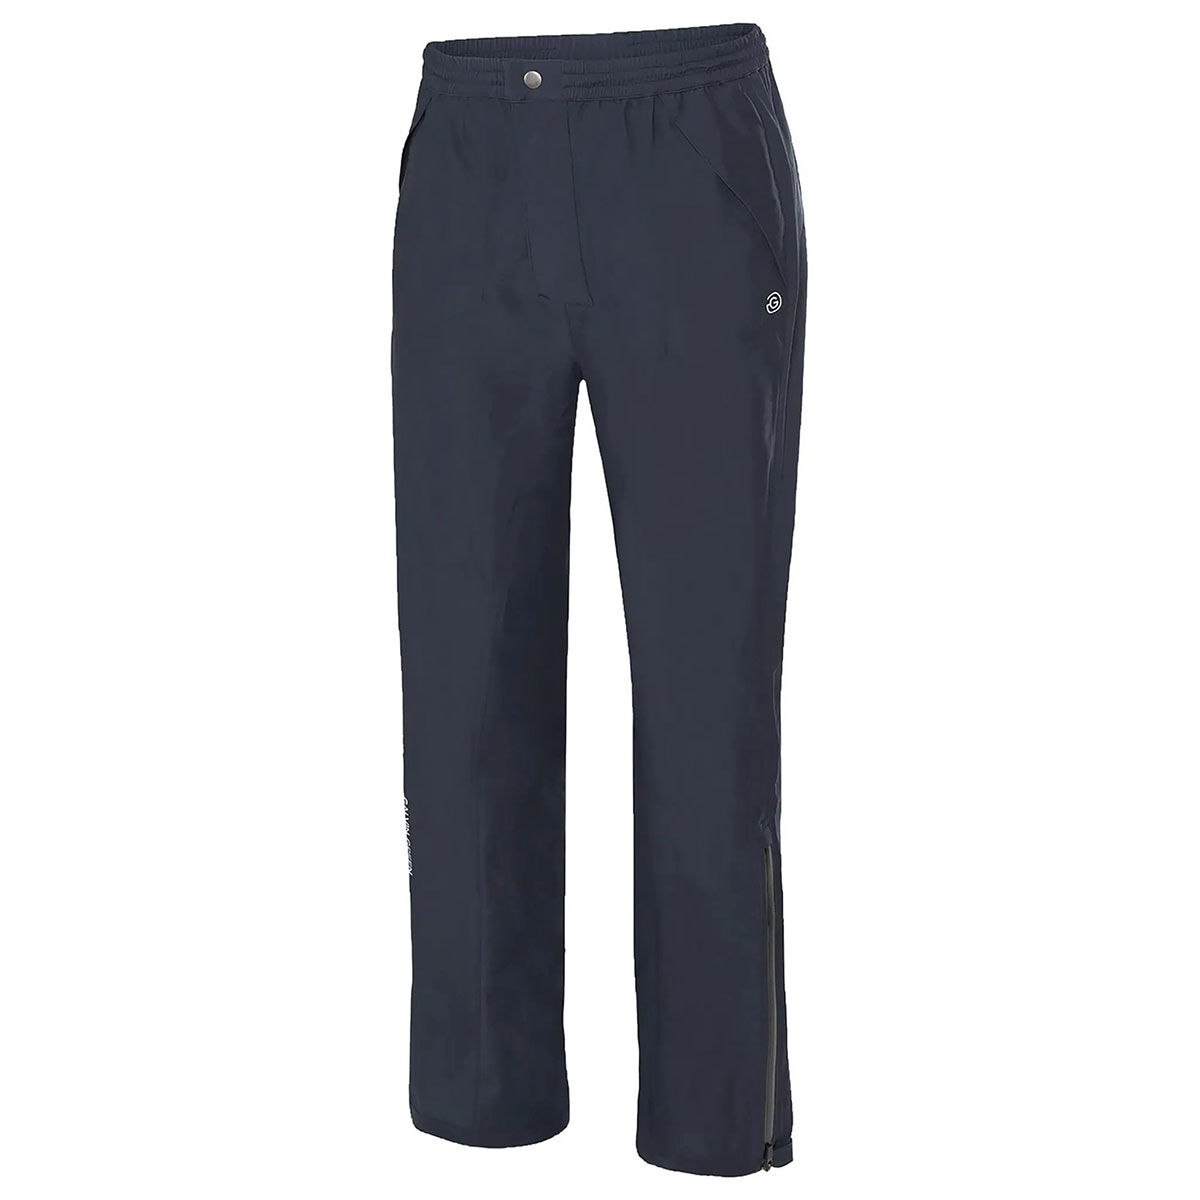 Galvin Green Navy Blue Lightweight Men’s Arthur Long Fit Golf Trousers, Size: Medium | American Golf